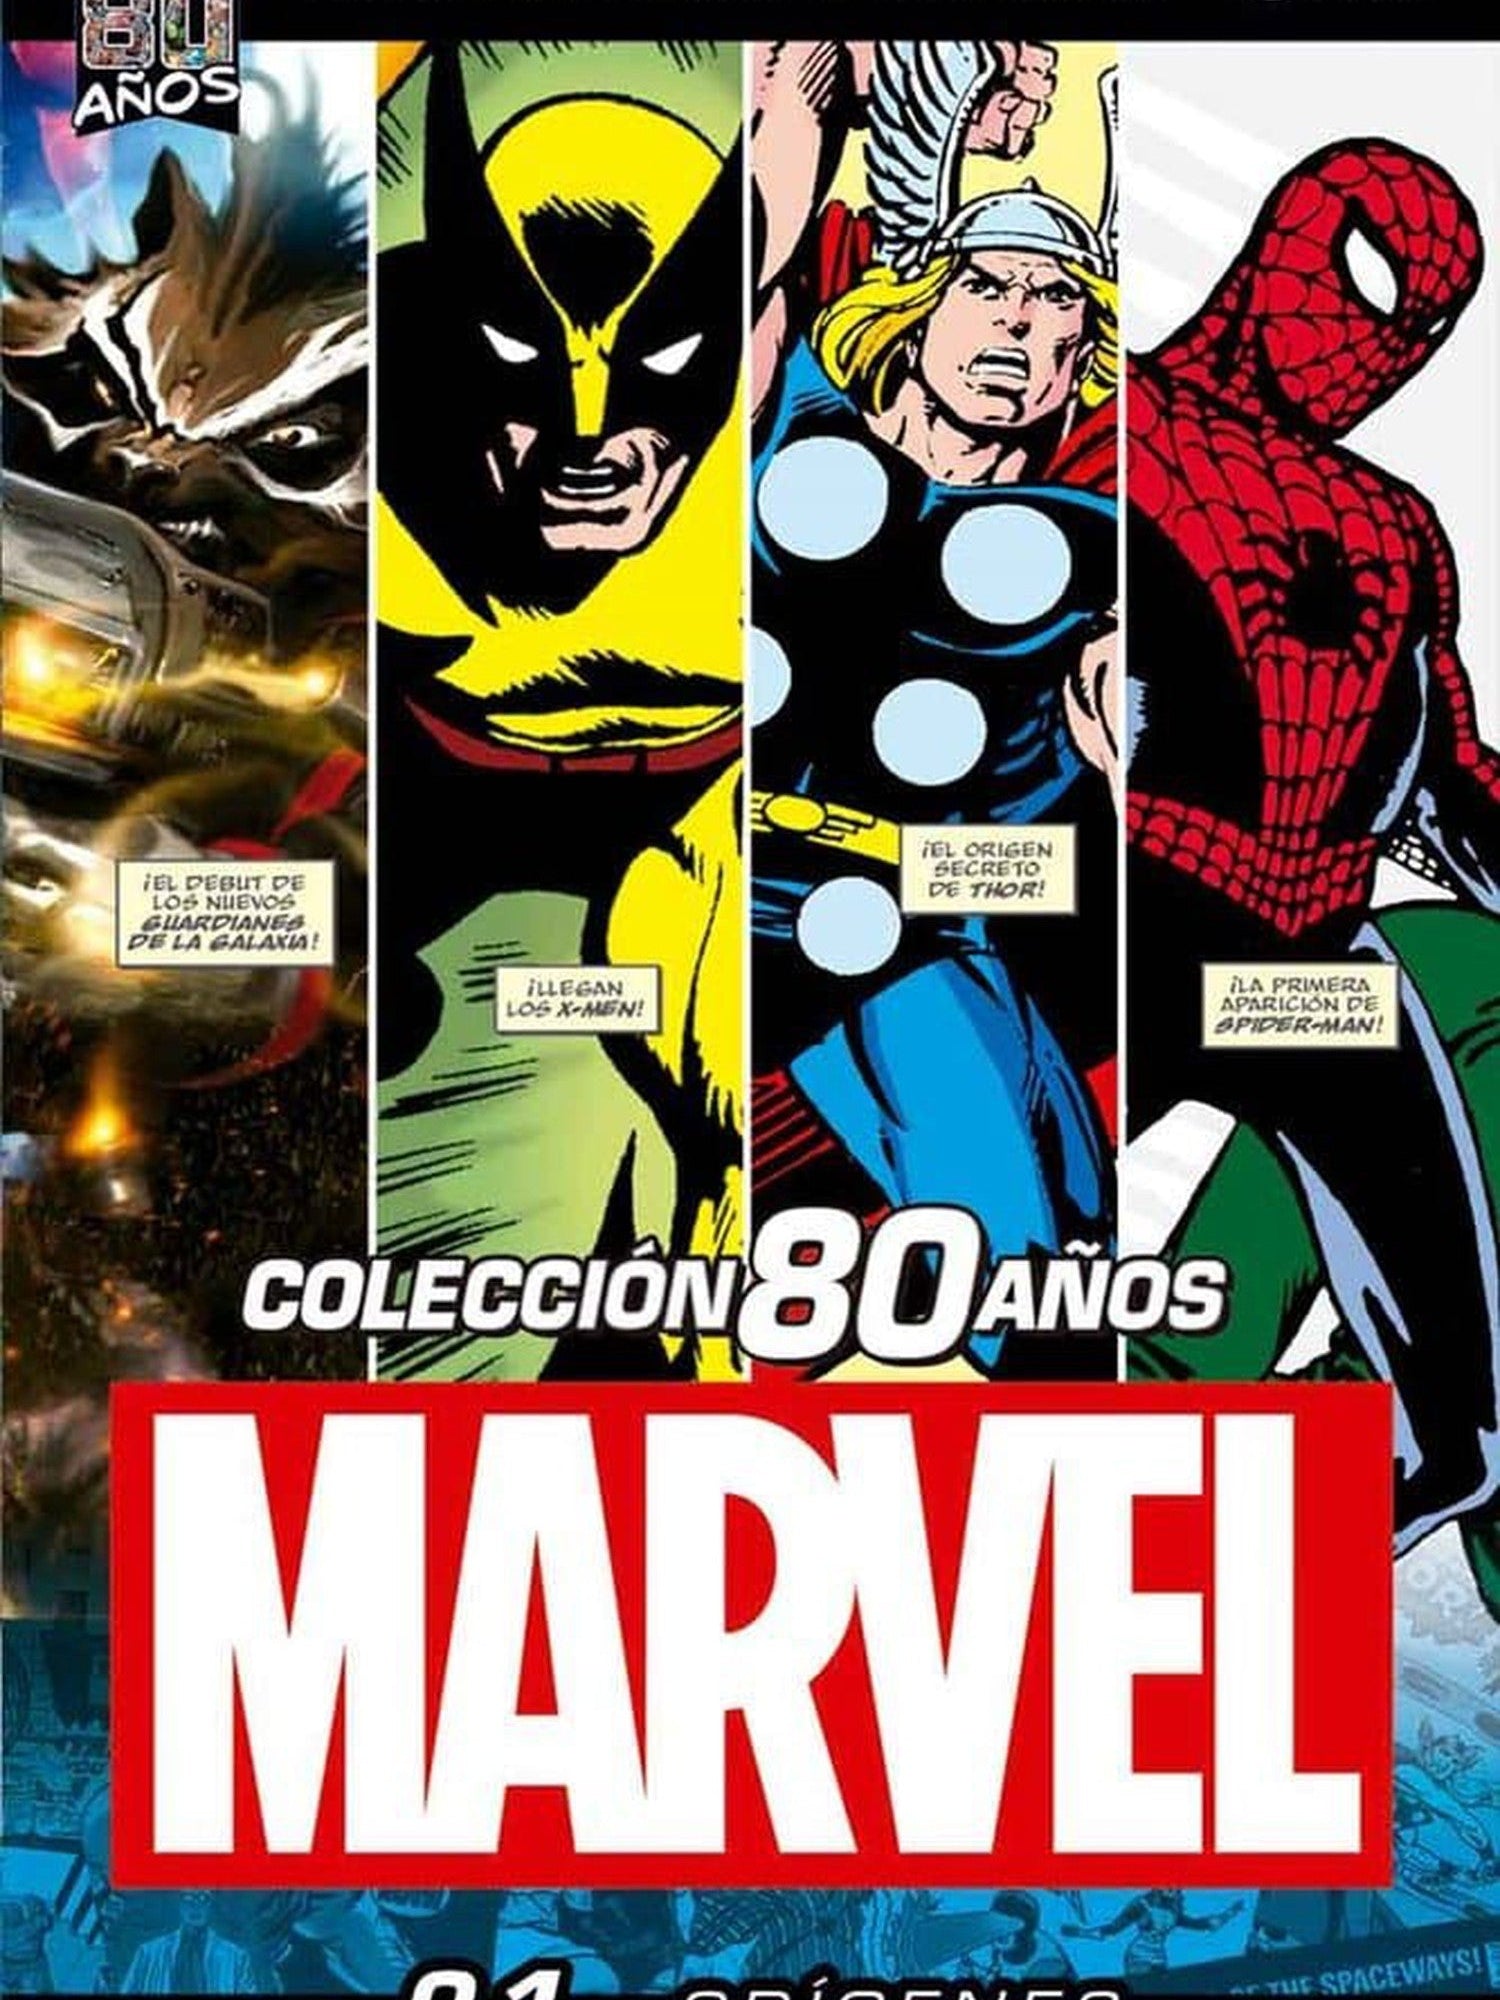 Colección Marvel 80 Años Starter Pack (Tomos 1 al 4) OVNI Press ENcuadrocomics